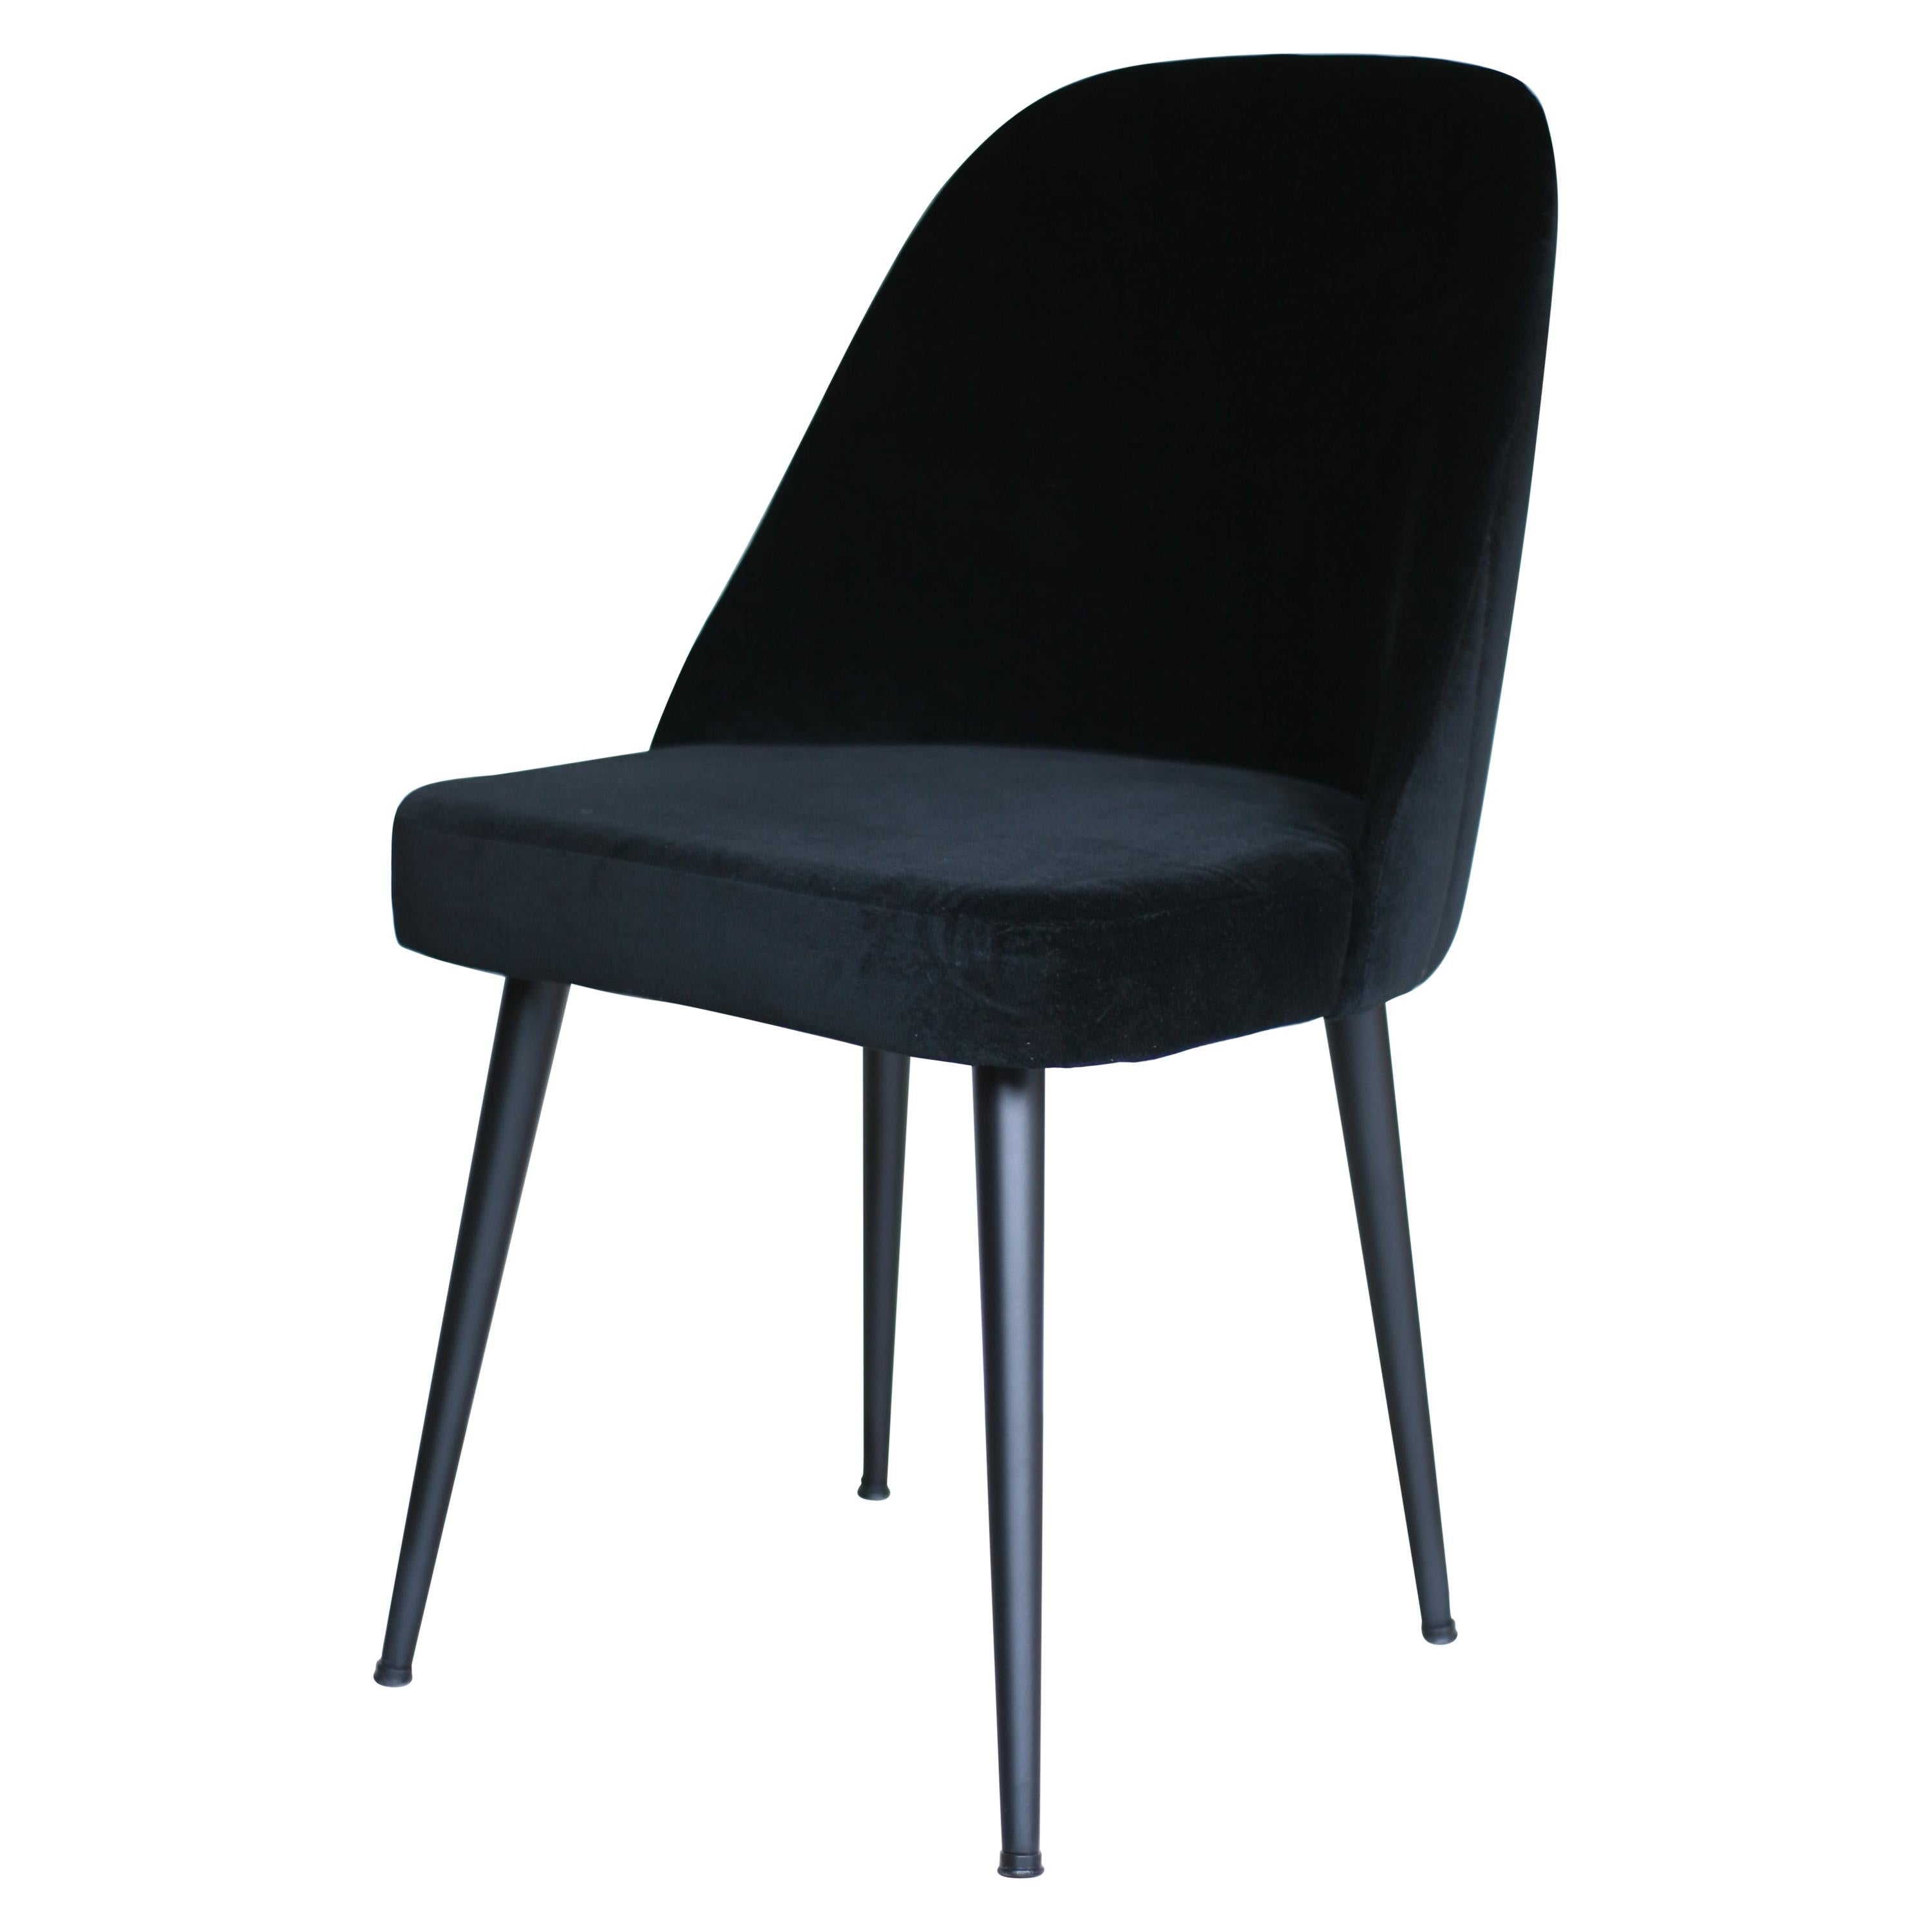 Moderner Stuhl aus schwarzem Ebenholz und schwarzem Samtstoff mit dekorativer Rückenlehne und schwarzem Stahlfuß